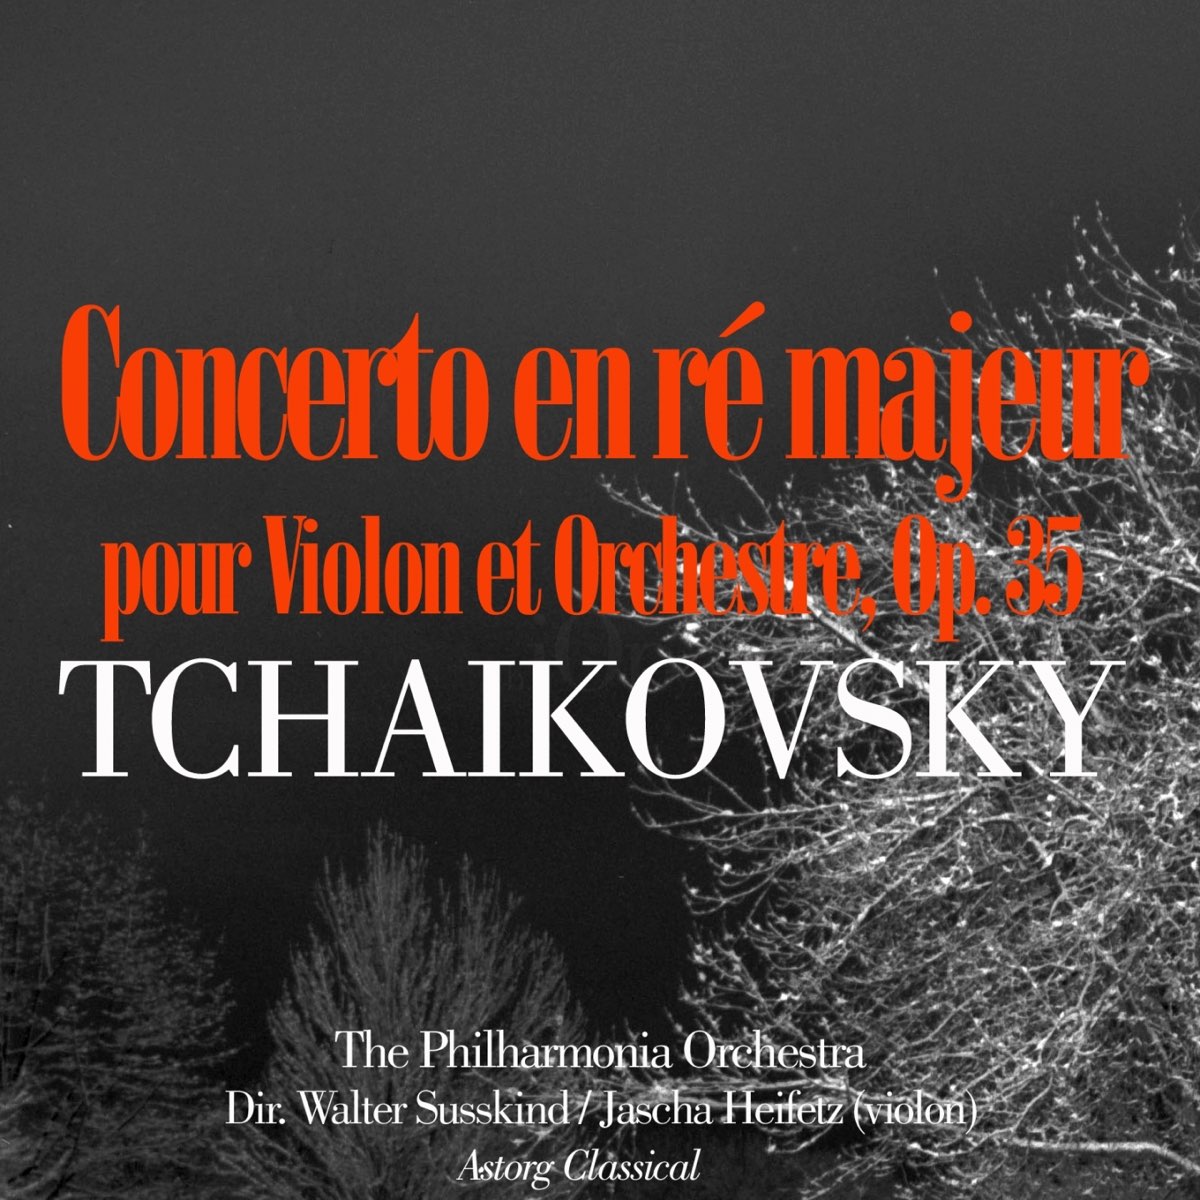 Tchaikovsky: Concerto en ré majeur pour Violon et Orchestre, Op. 35 - EP –  Album par Philharmonia Orchestra, Walter Susskind & Jascha Heifetz – Apple  Music